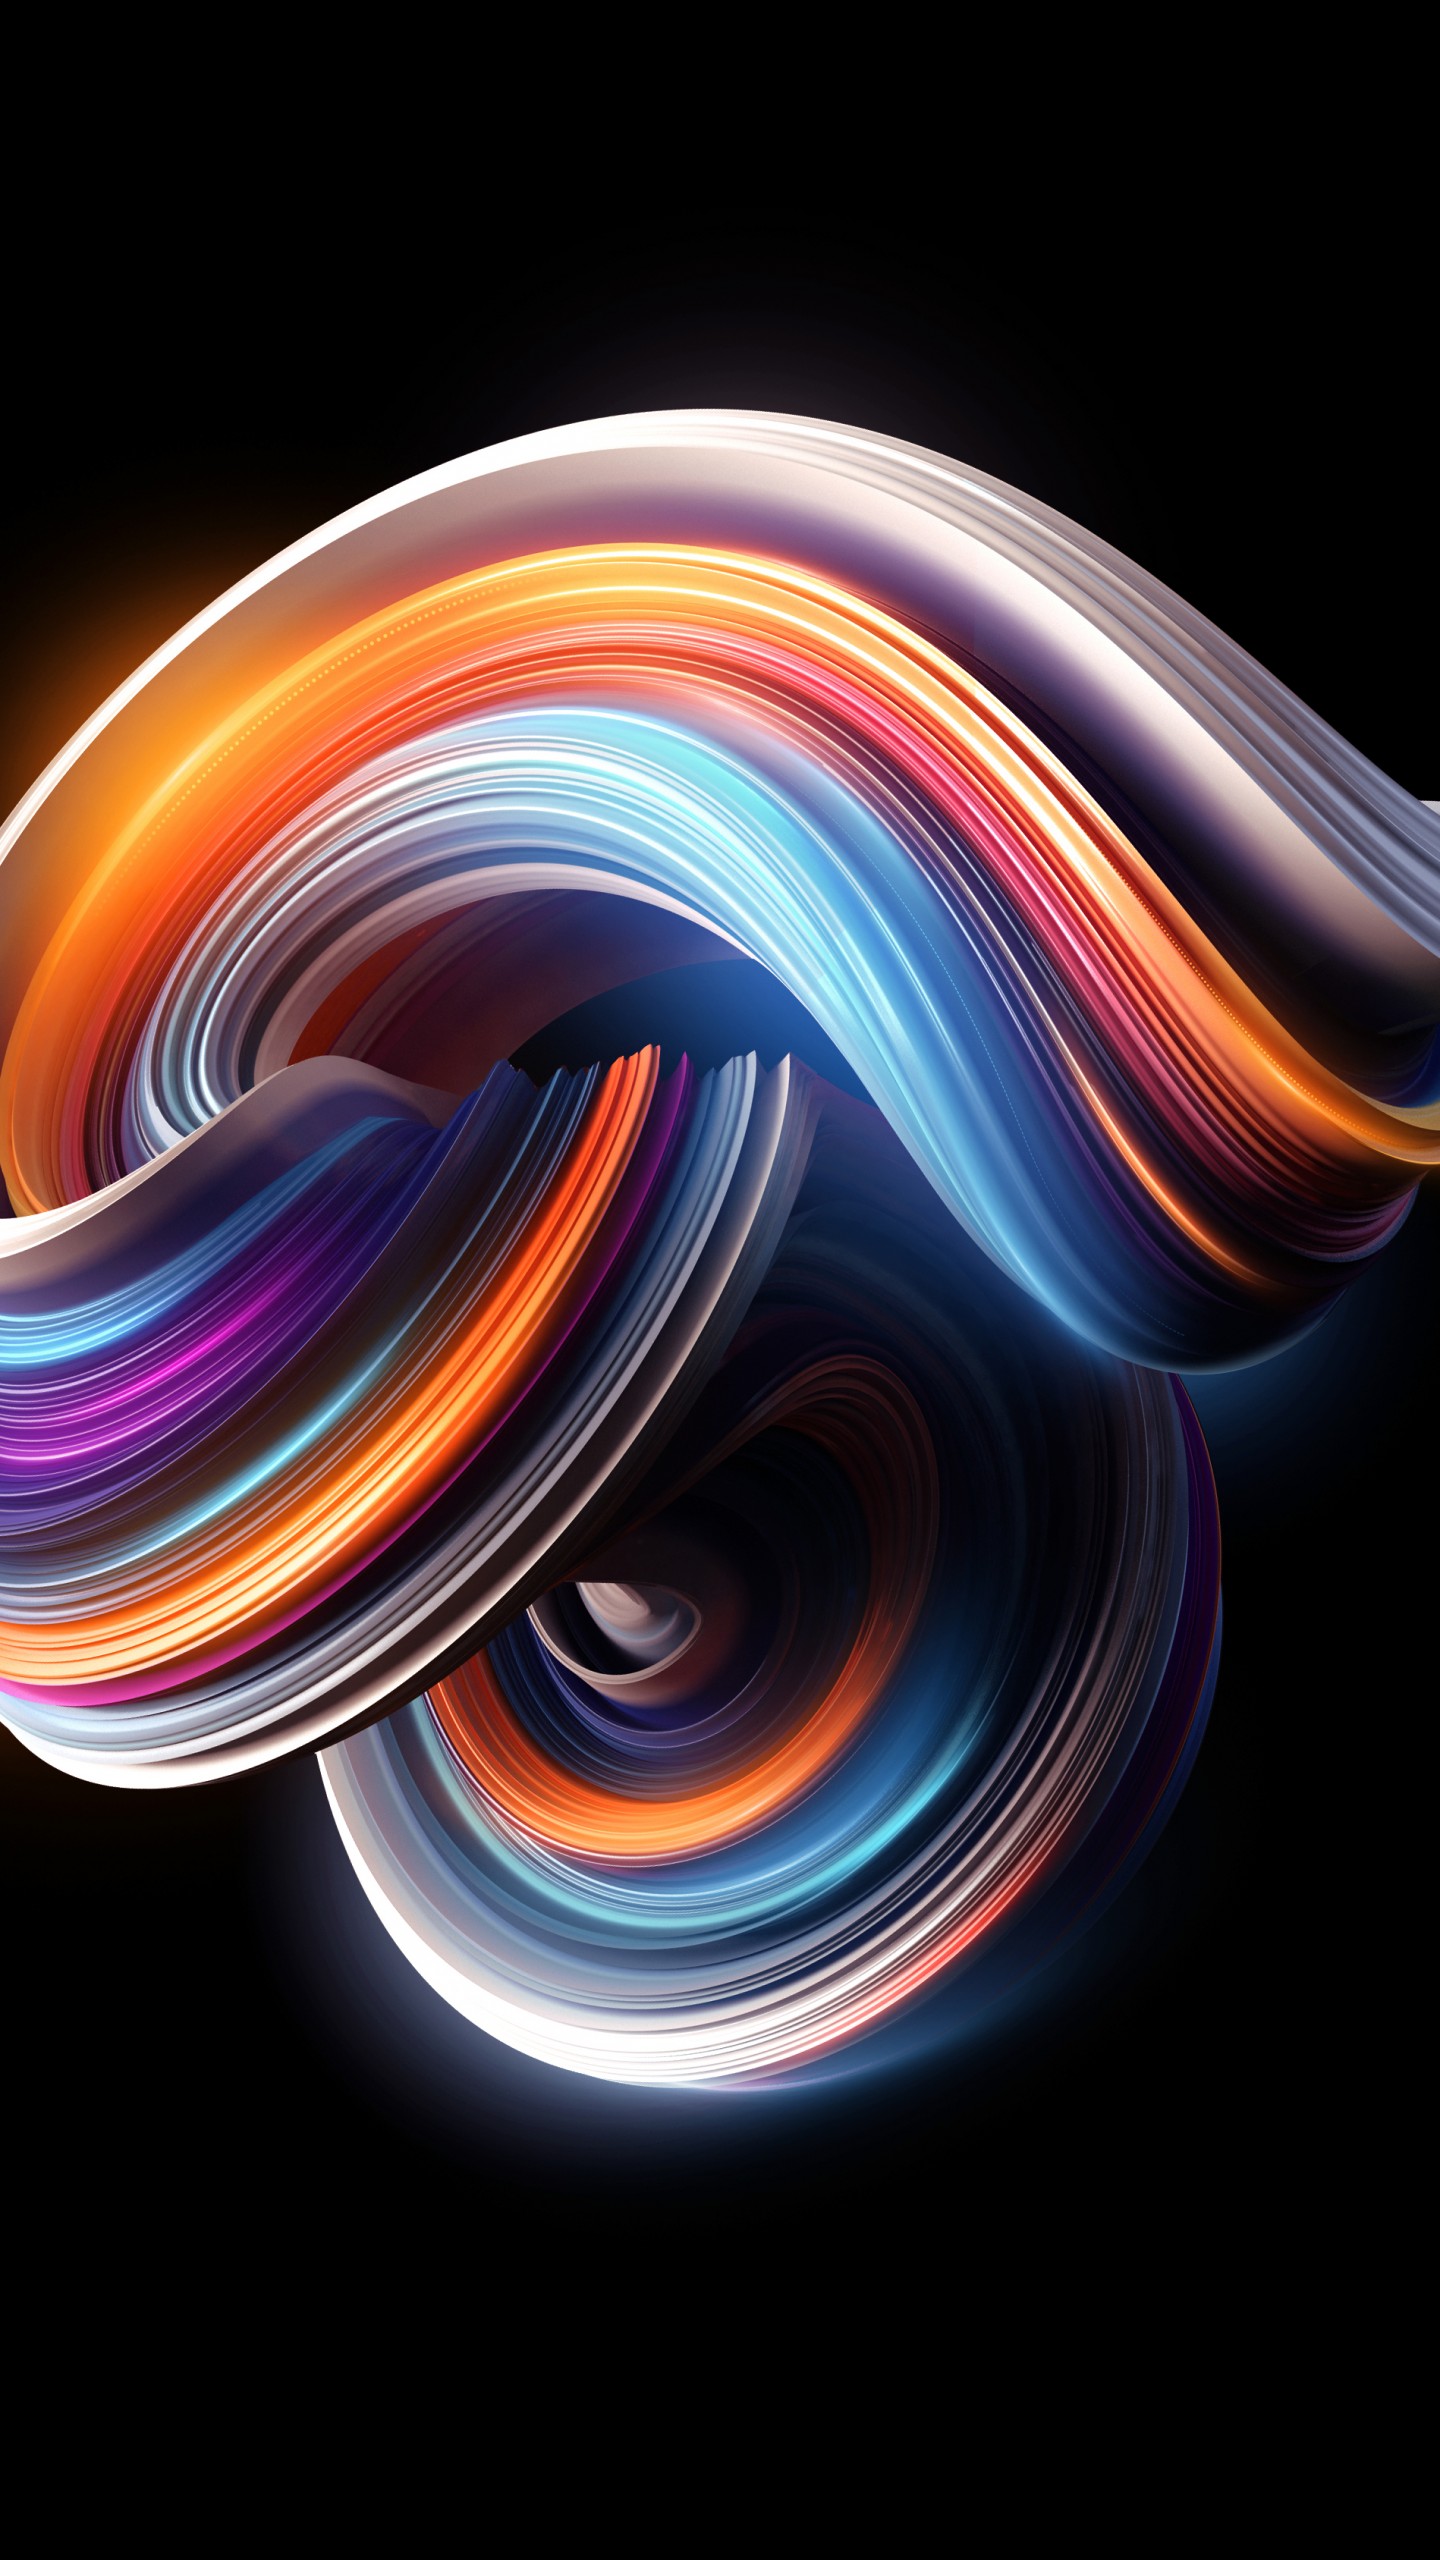 redmi note 3 fond d'écran hd,lumière,vague,orange,conception graphique,vortex